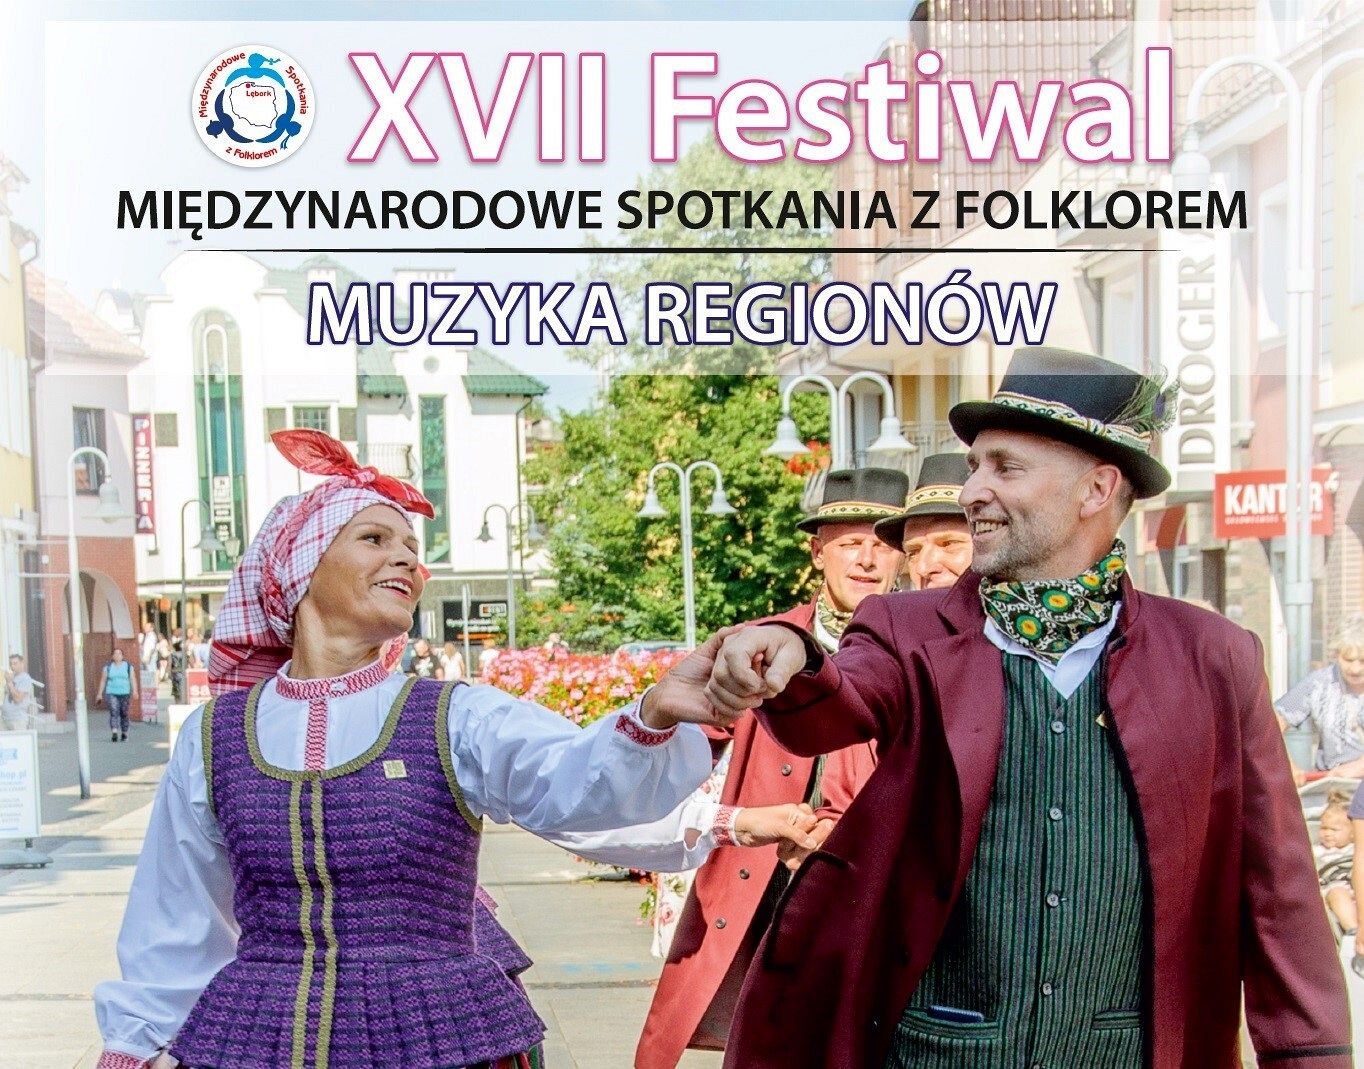 Festiwal - XVII Międzynarodowe Spotkania z